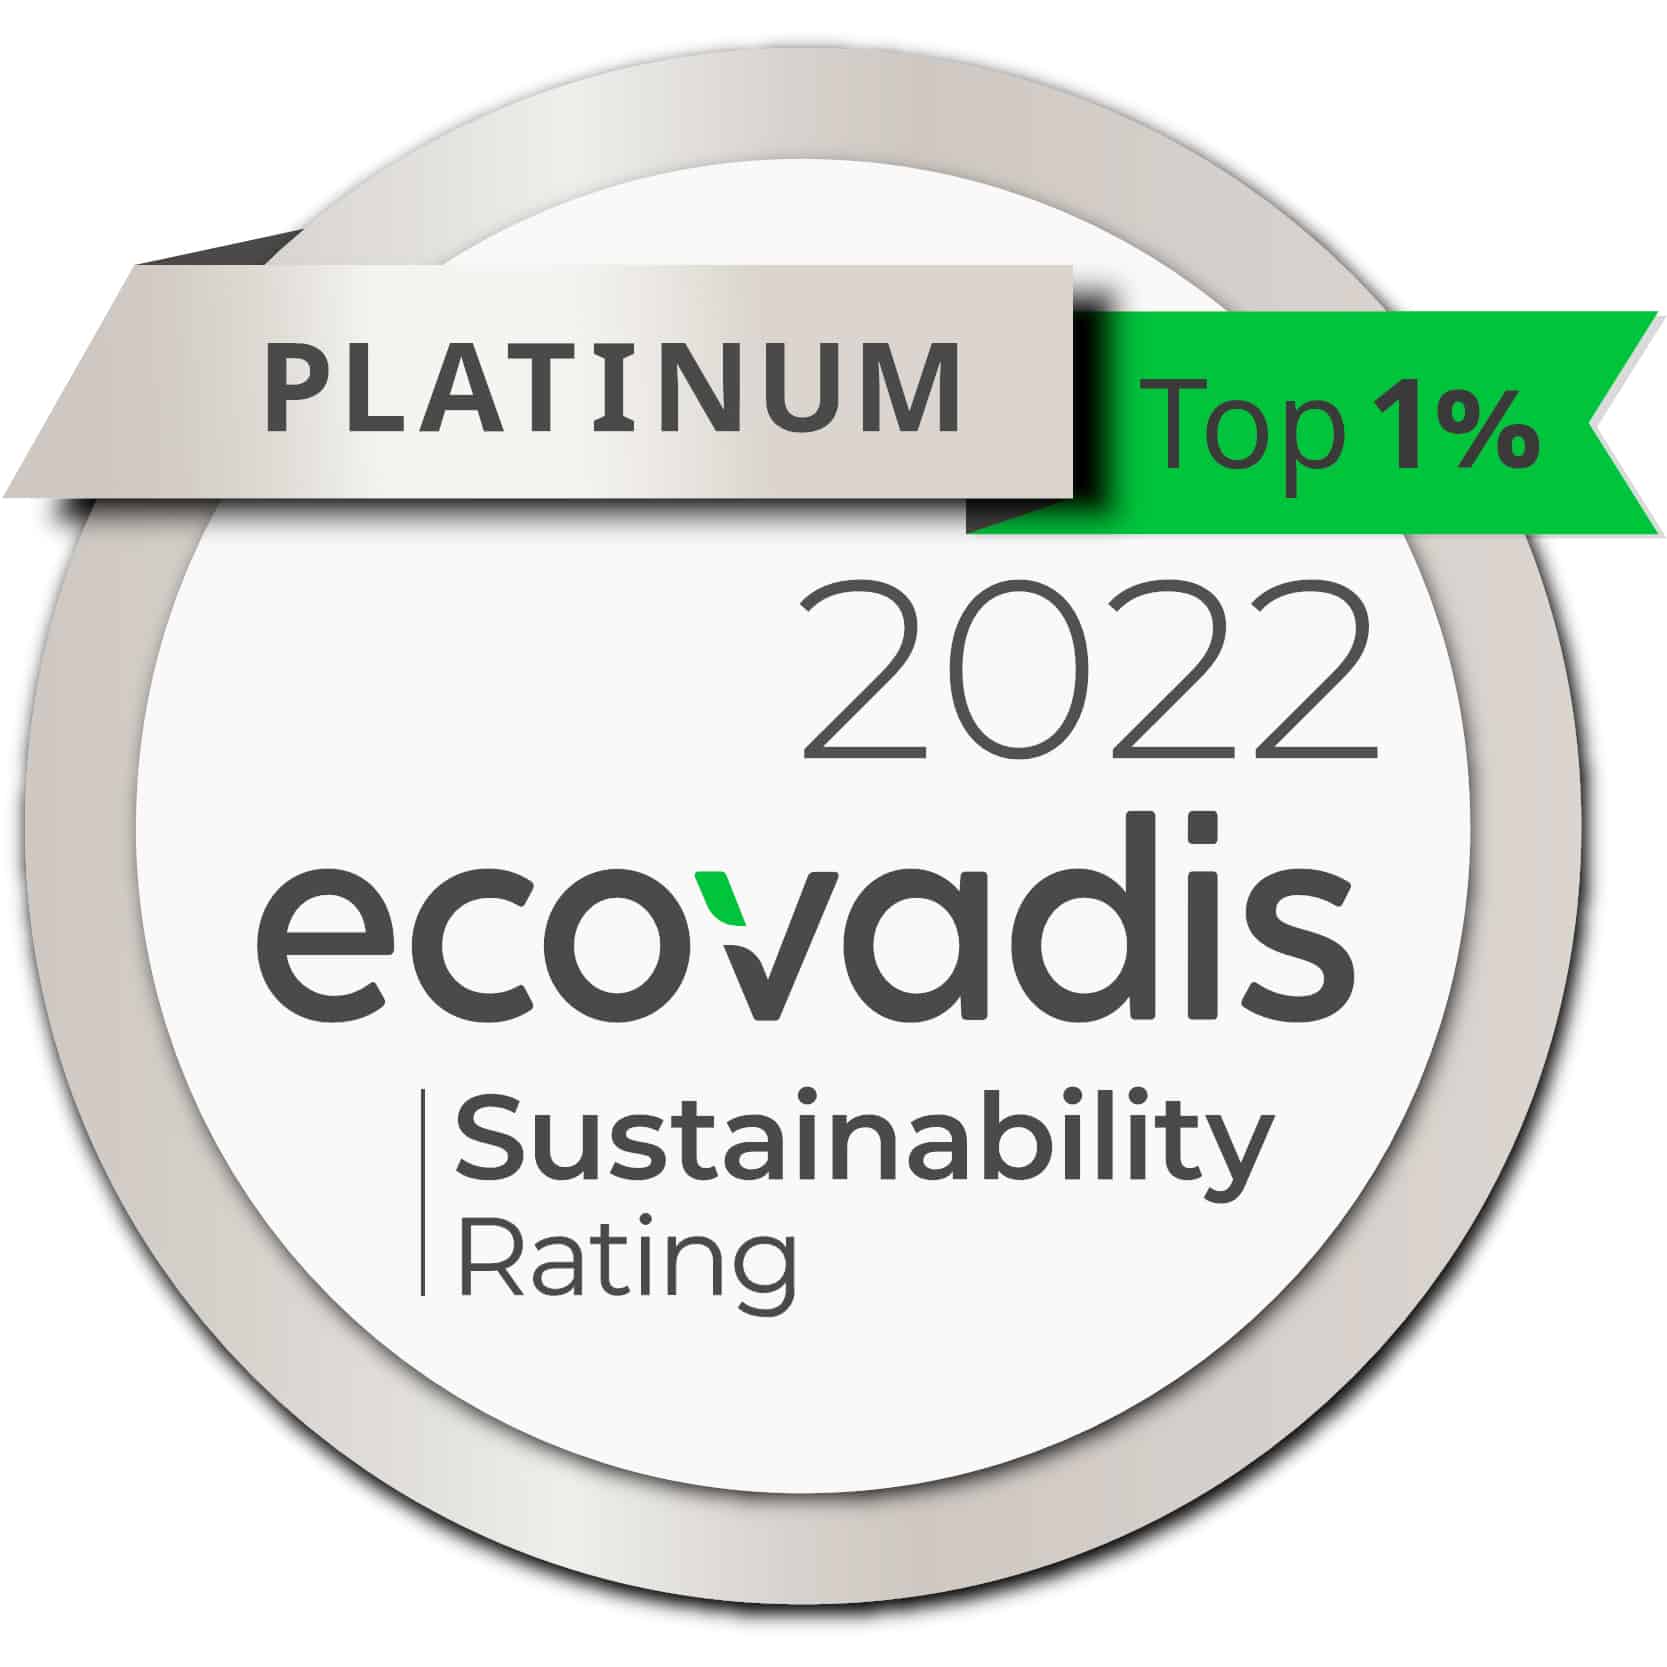 M&M Epson_ecovadis-platinum-2022